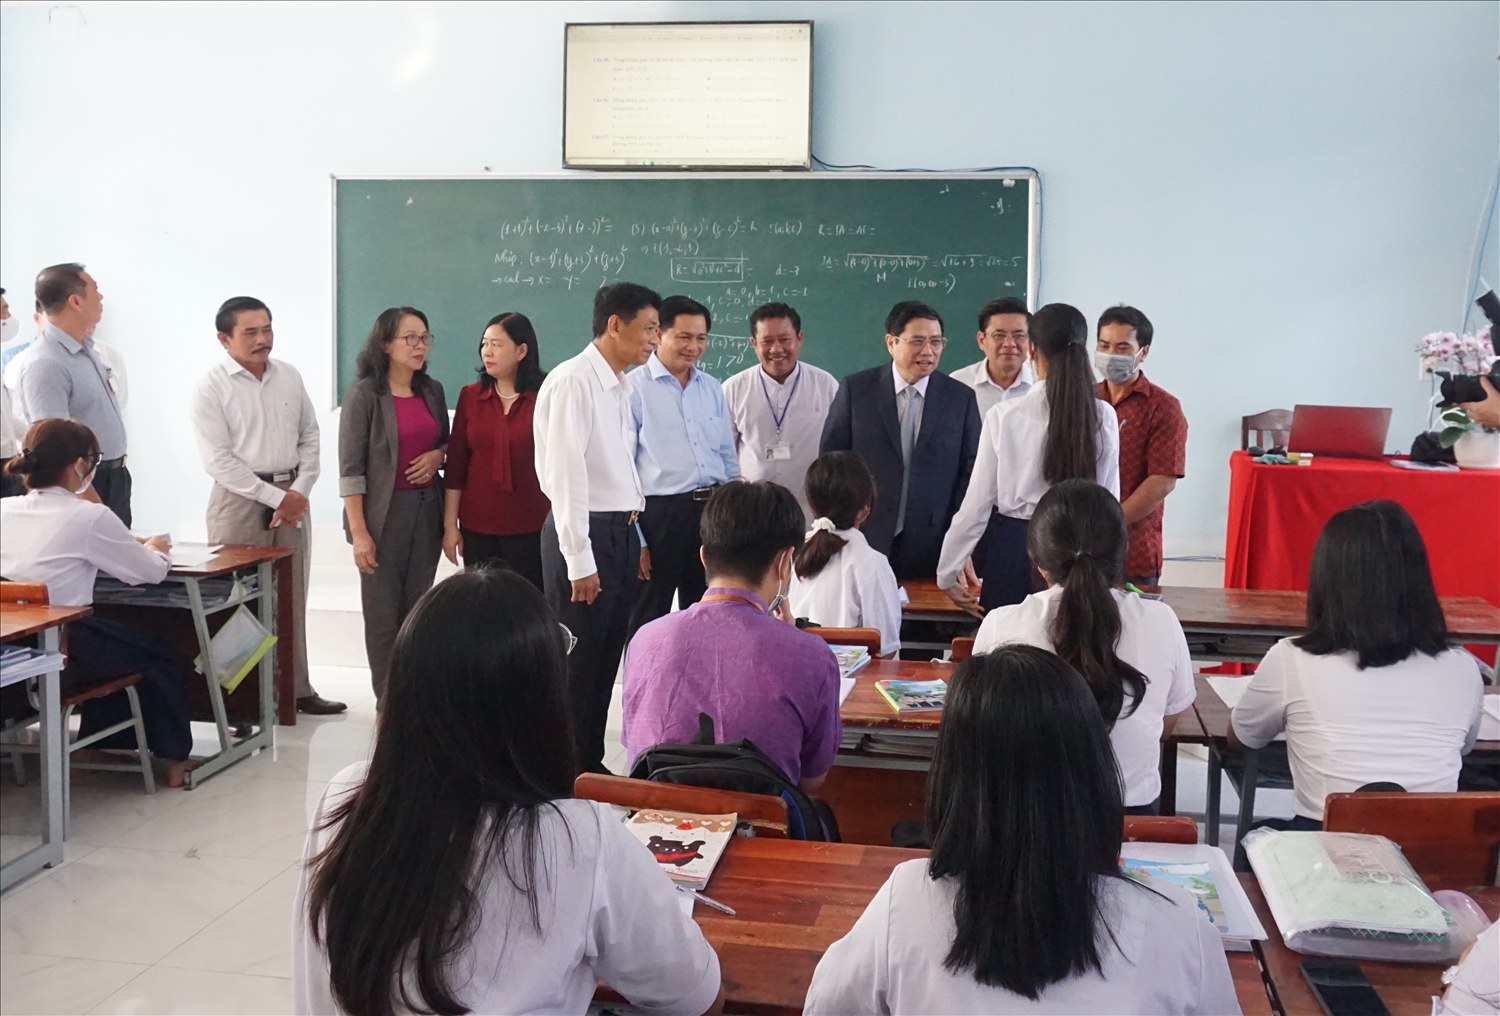 Thủ tướng Phạm Minh Chính và đoàn công tác đến các lớp học thăm hỏi về điều kiện sinh hoạt và học tập của học sinh nhà trường